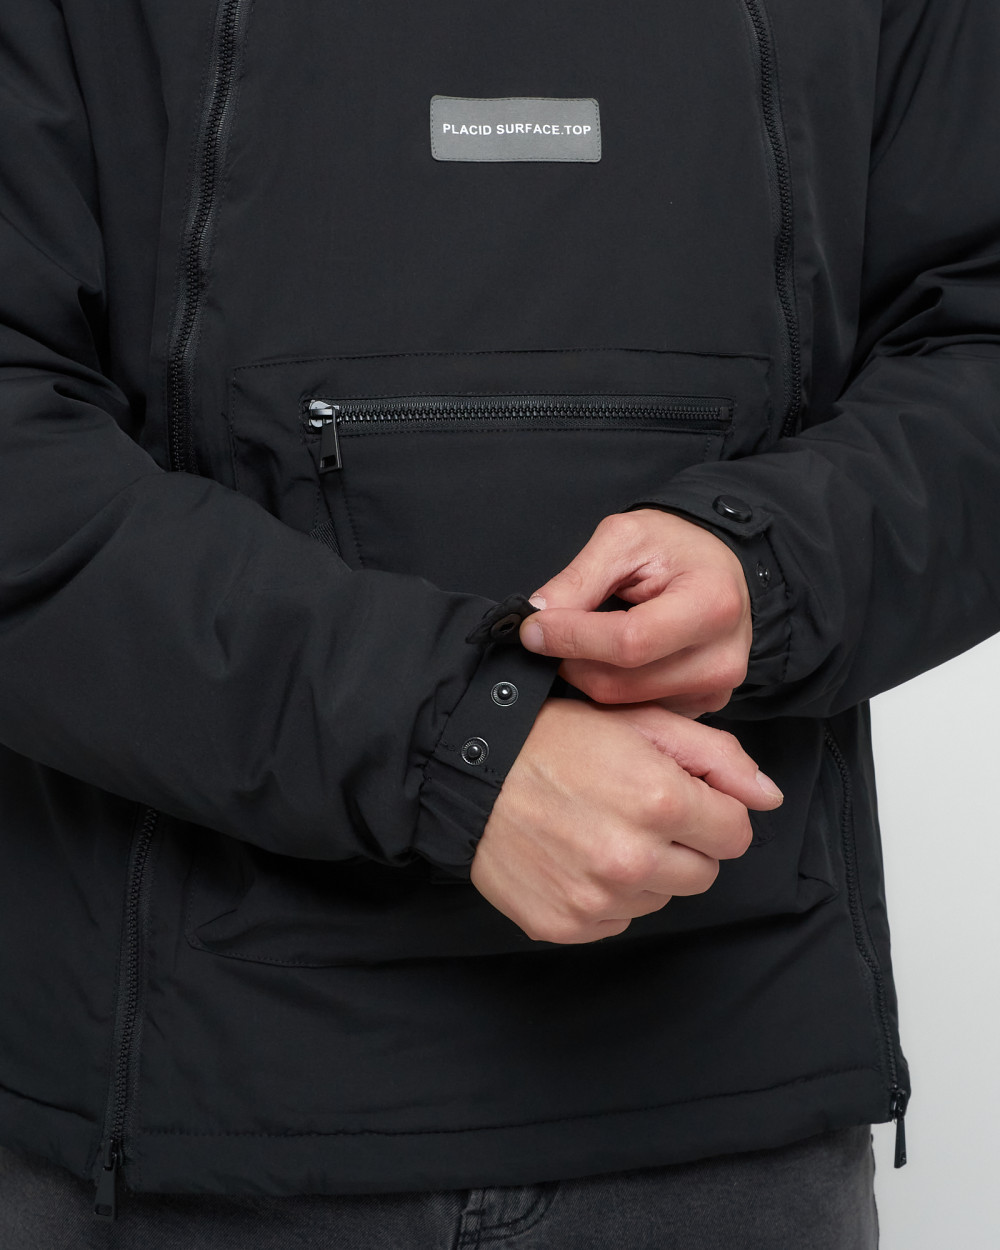 Купить куртку анорак спортивную мужскую оптом от производителя недорого в Москве 1887Ch 1